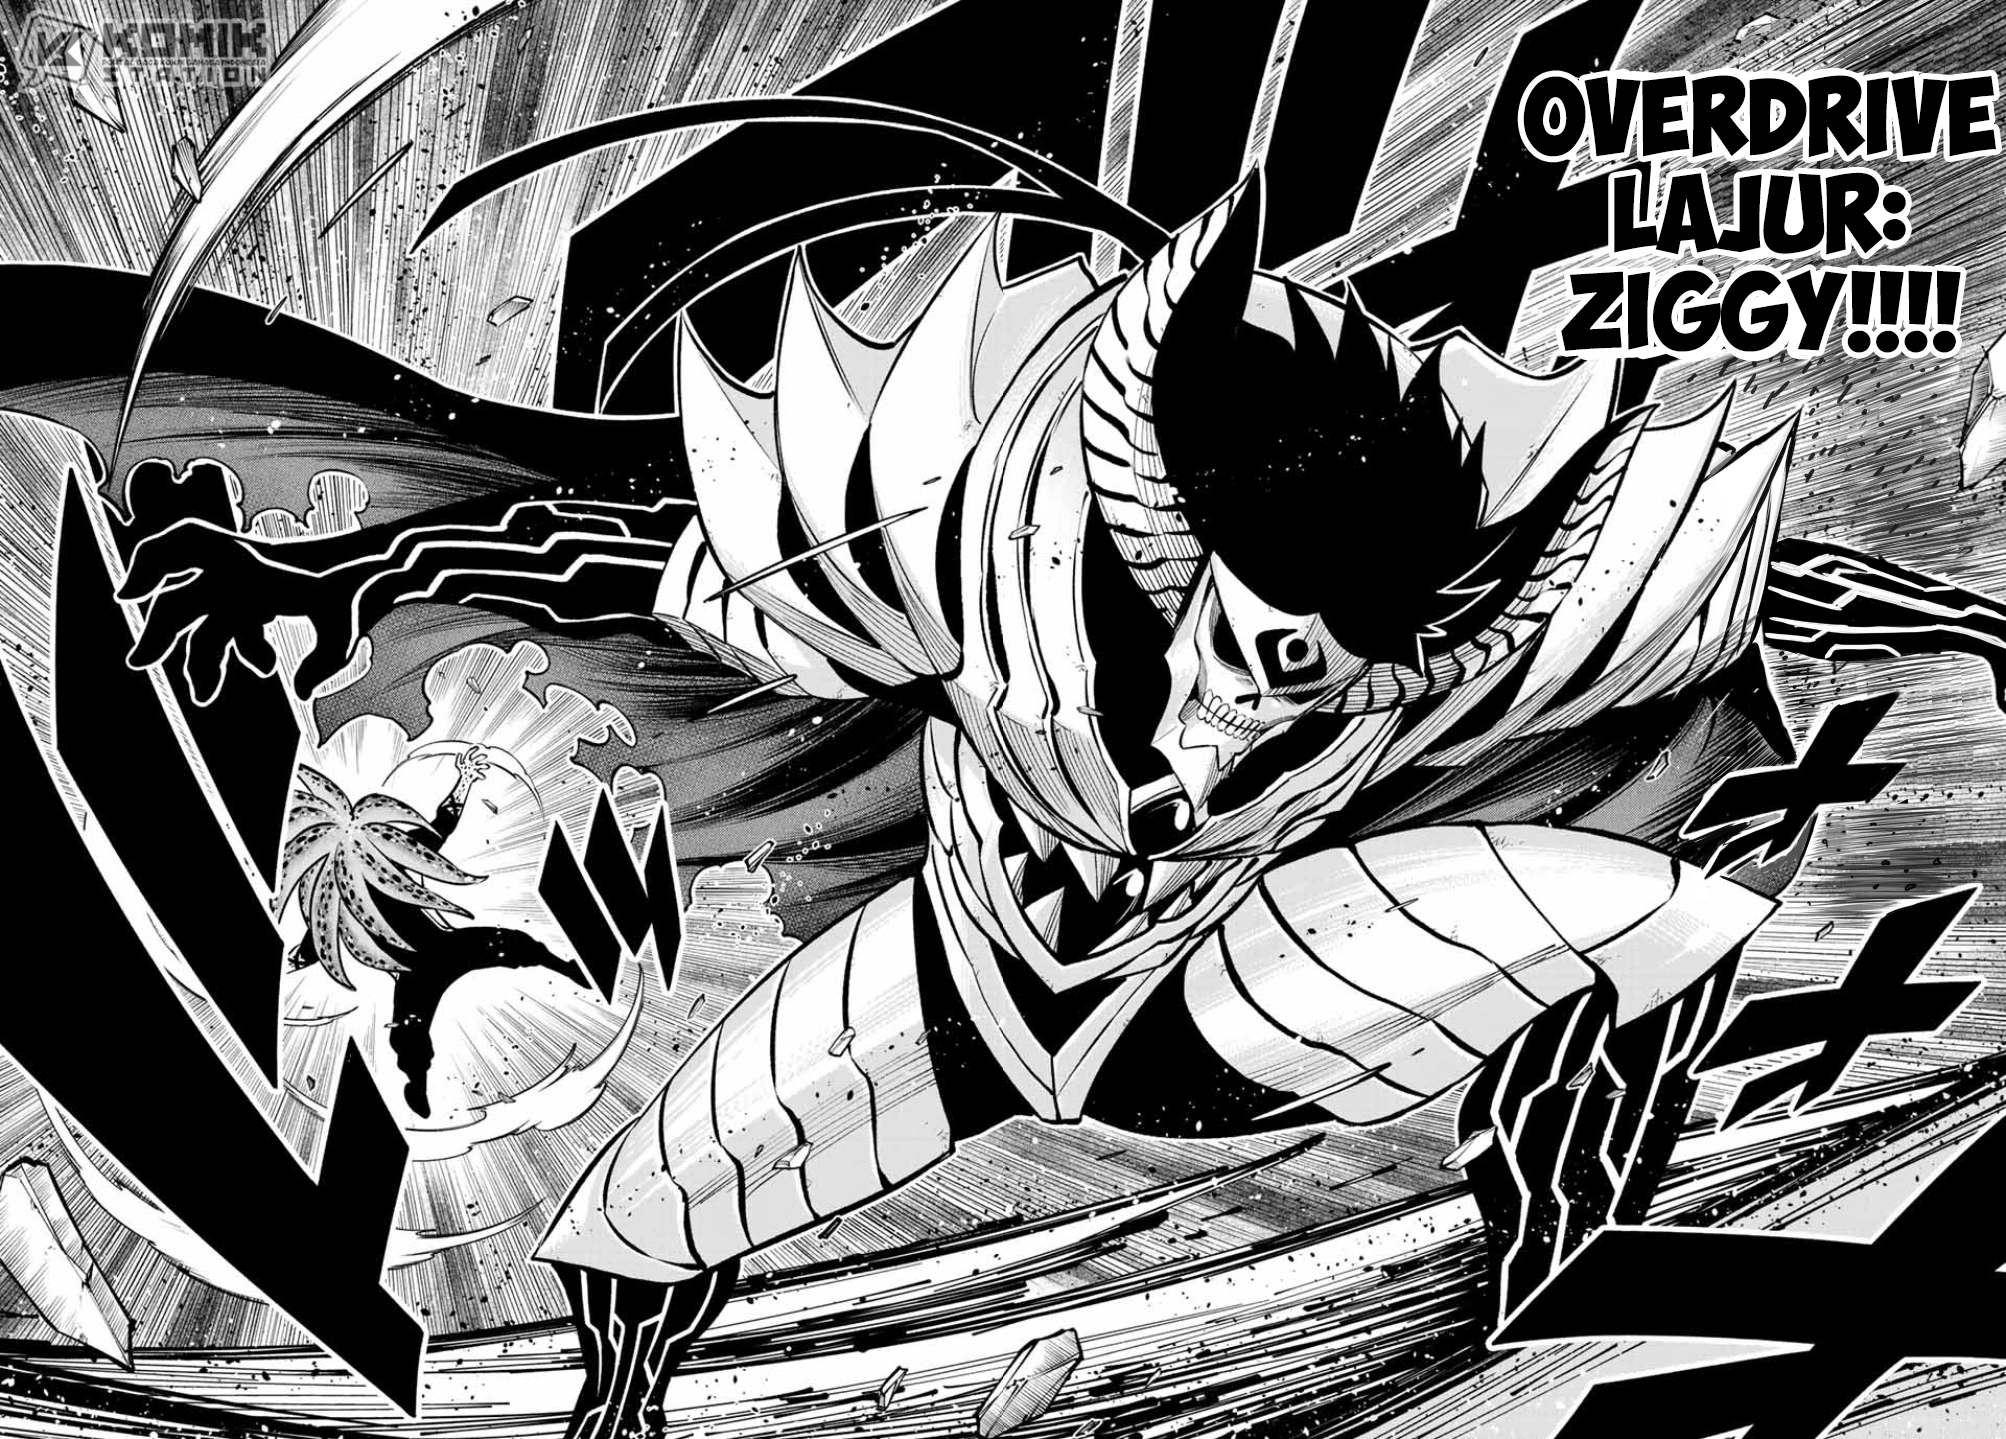 Eden’s Zero Chapter 230